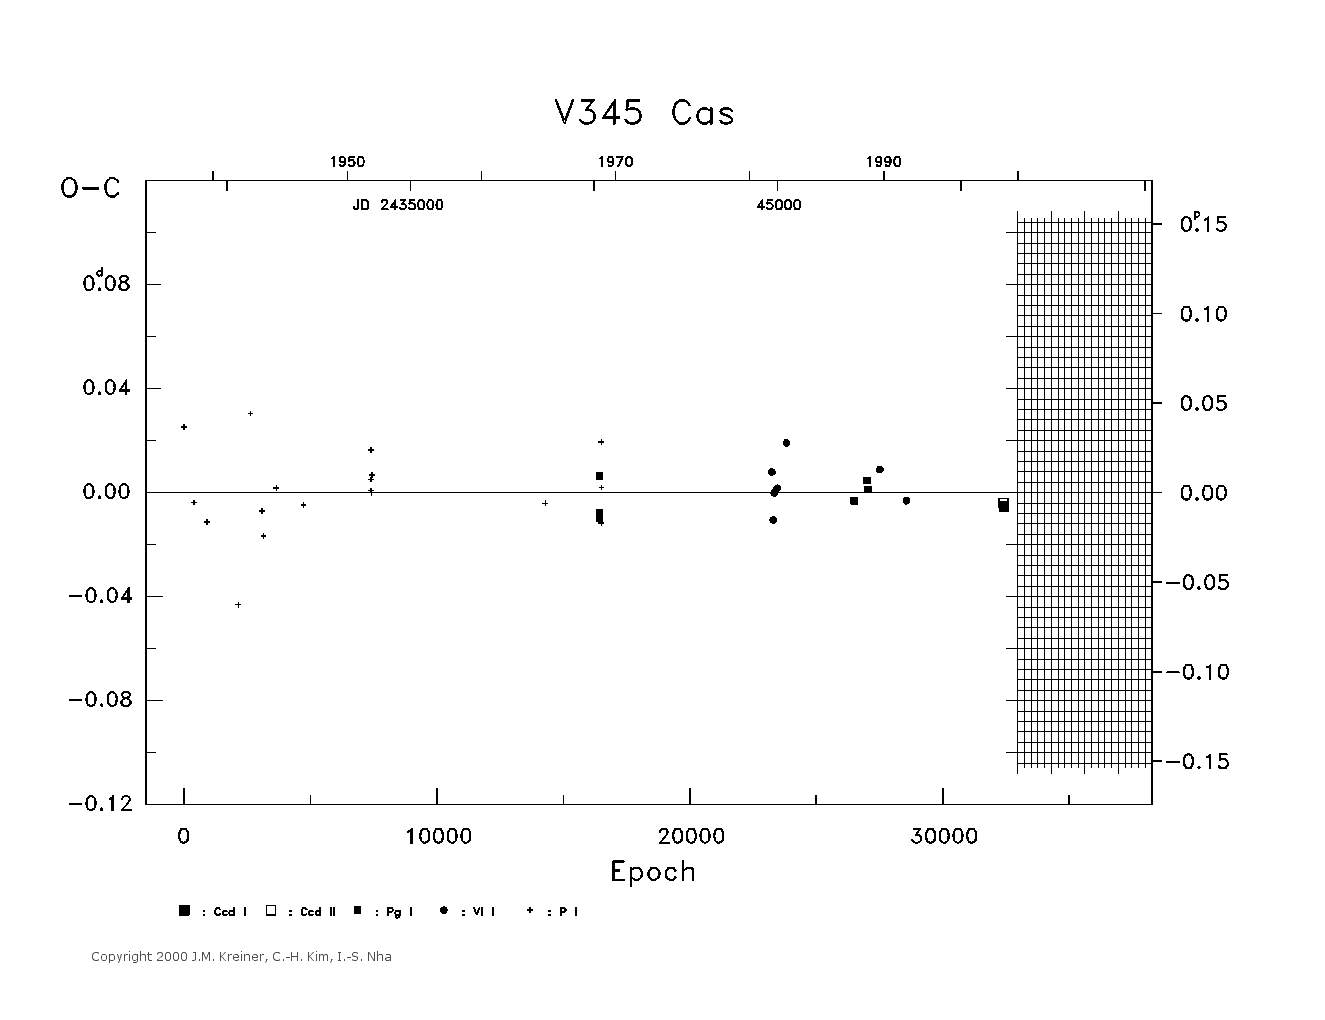 [IMAGE: large V345 CAS O-C diagram]